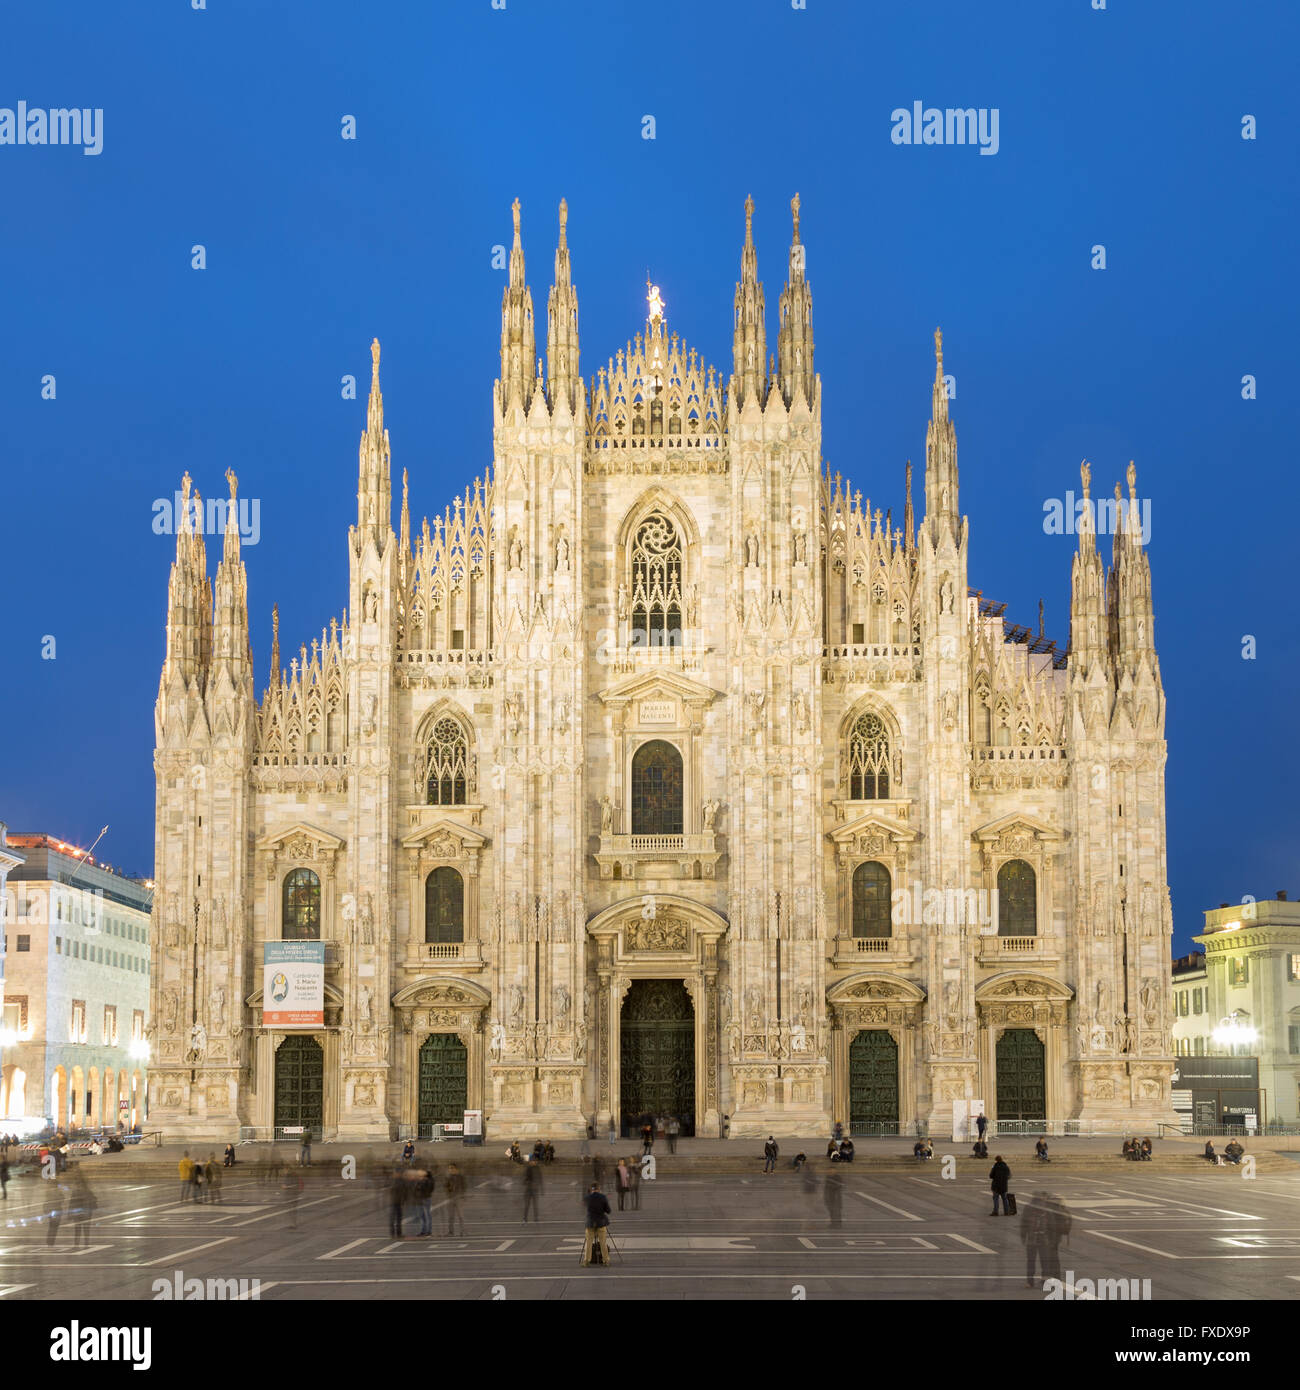 La Catedral de Milán al atardecer, vista frontal, la Piazza del Duomo, Milan, Italia. Foto de stock